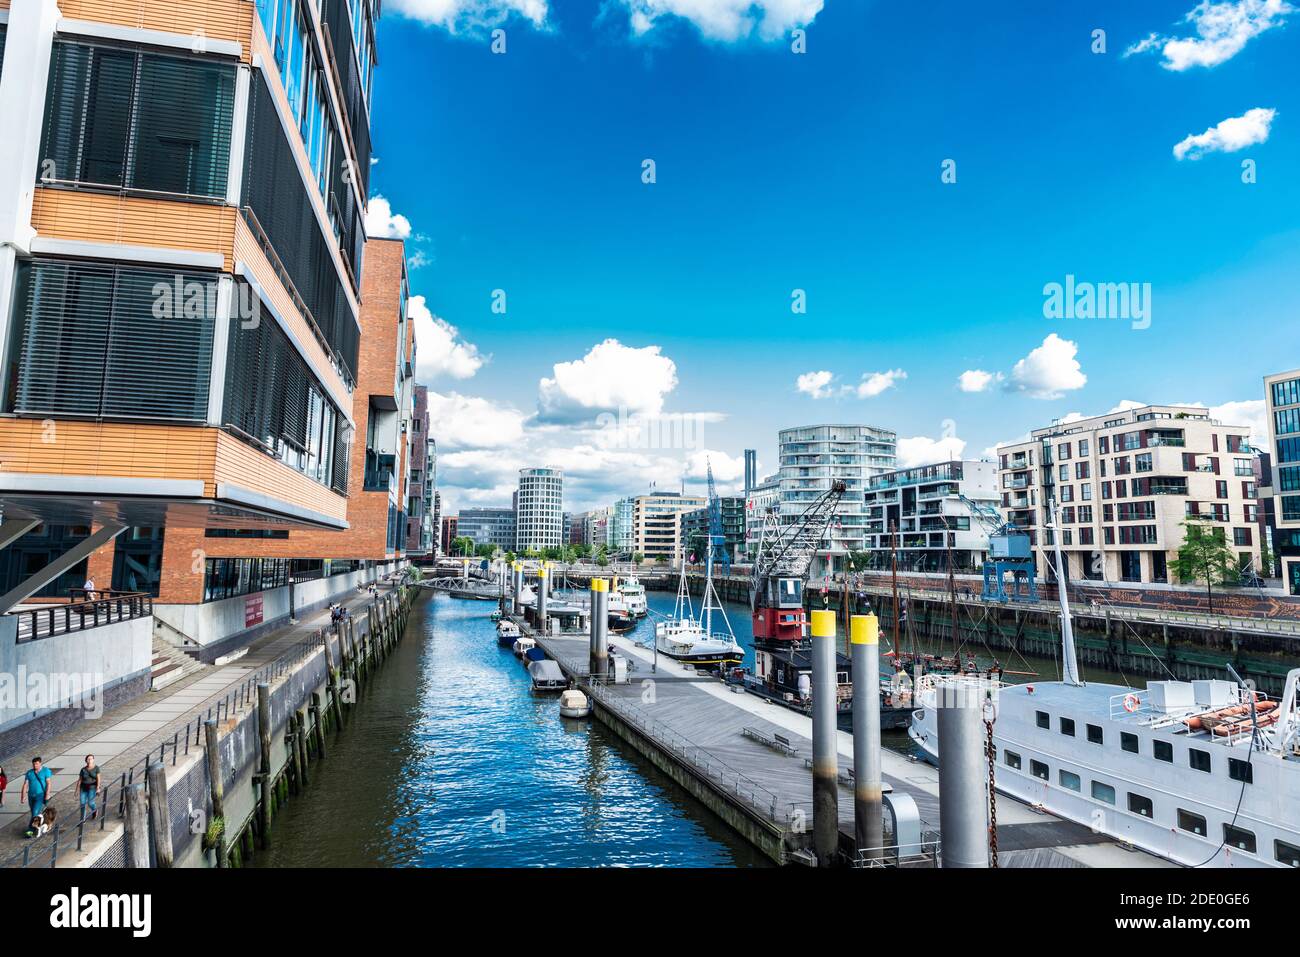 Hamburg, 21. August 2019: Moderne Gebäude und eine Anlegestelle mit Booten und Menschen in der Nähe eines Kanals im Stadtteil HafenCity, Hamburg Stockfoto